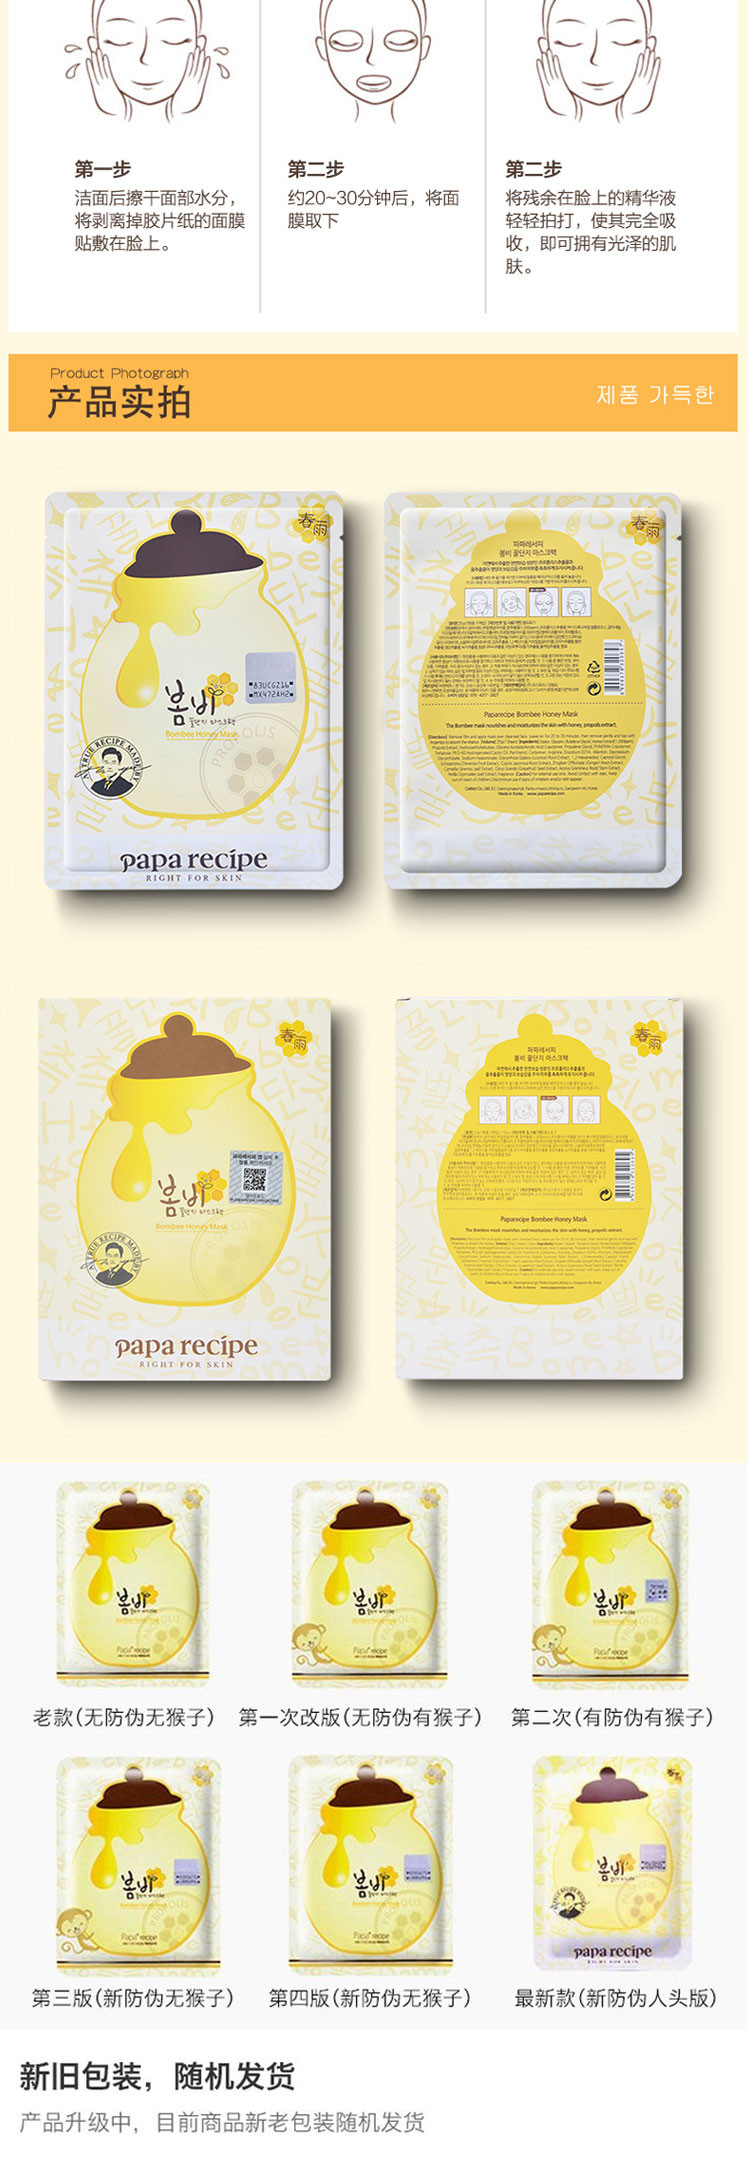 【海外购】【包邮包税】韩国Papa recipe爸爸的礼物 春雨蜂蜜黄色蜂蜜保湿补水面膜贴10片*2